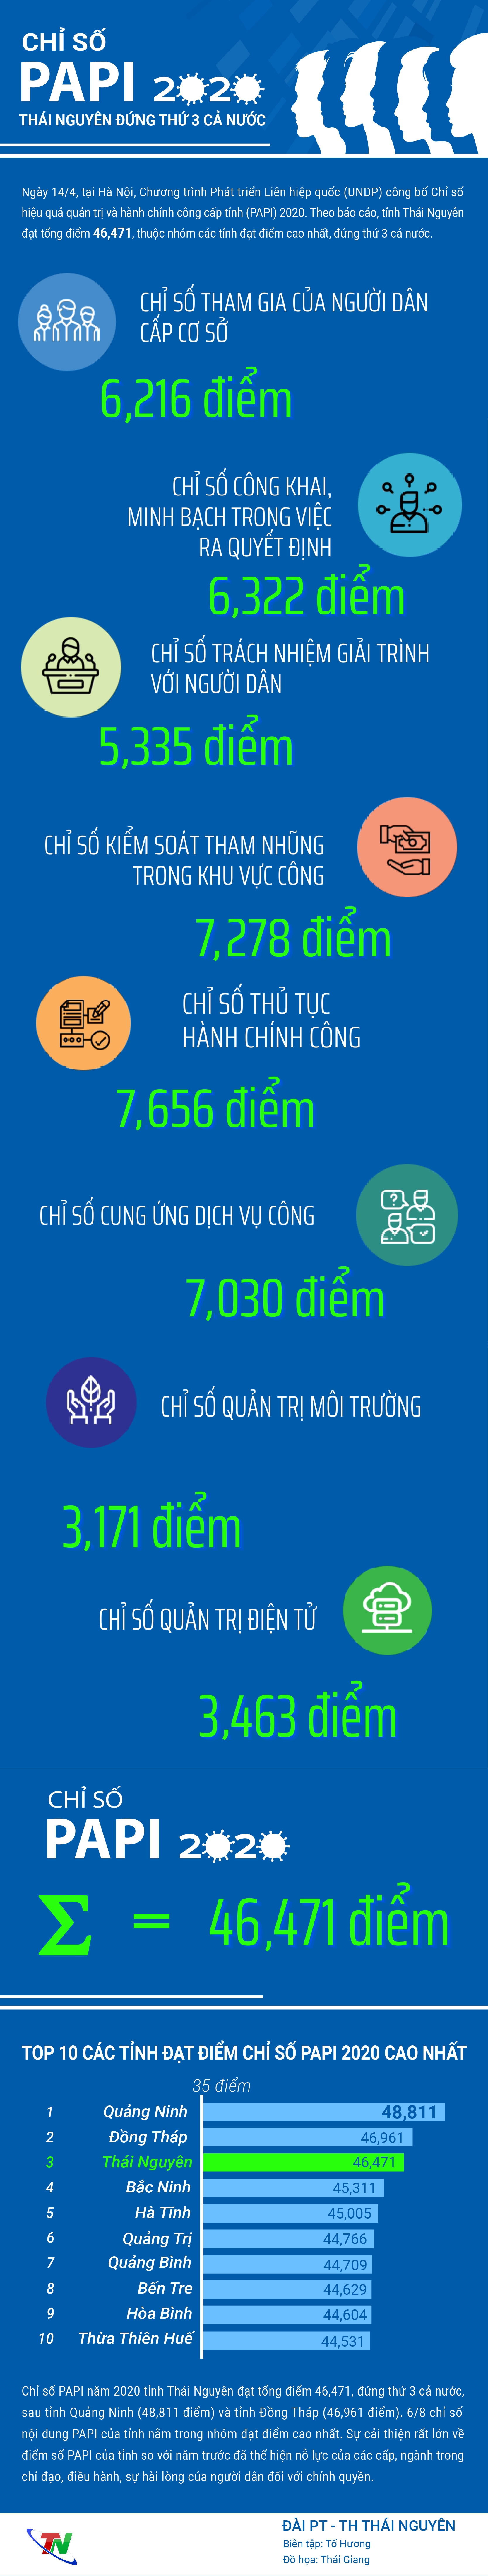 [Infographics] Chỉ số PAPI 2020: Thái Nguyên đứng thứ 3 cả nước